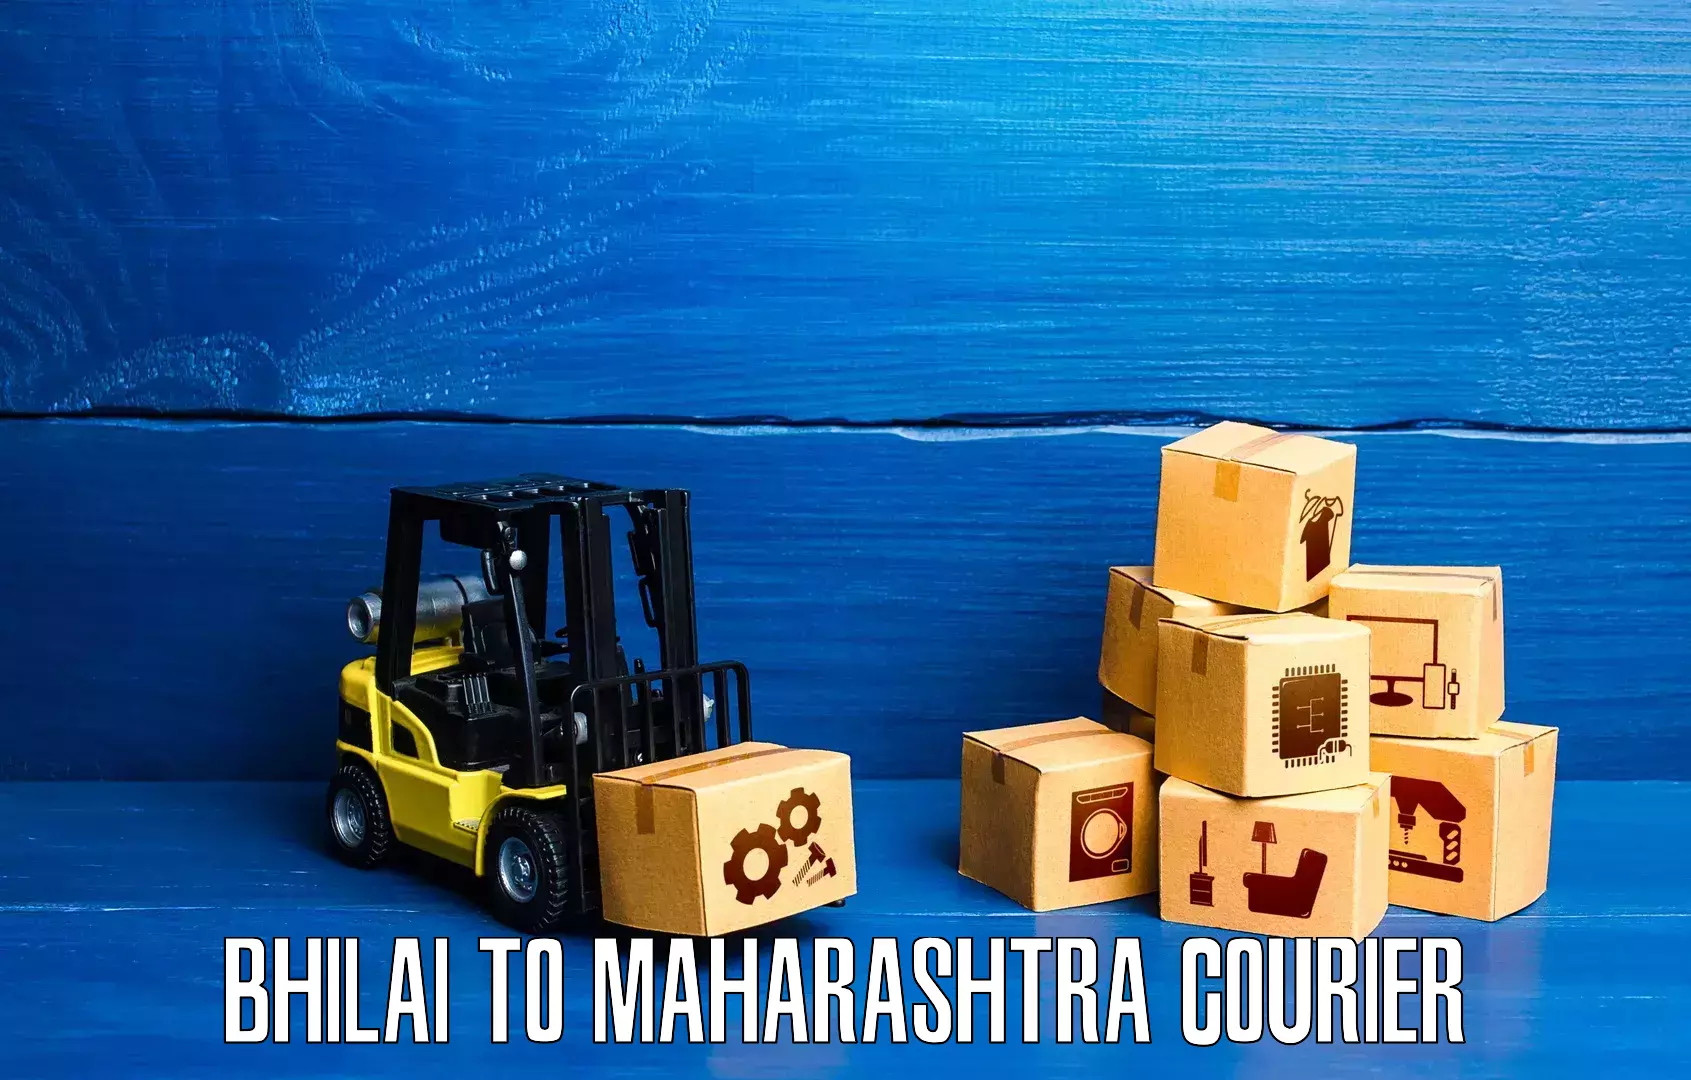 Secure shipping methods Bhilai to Maharashtra